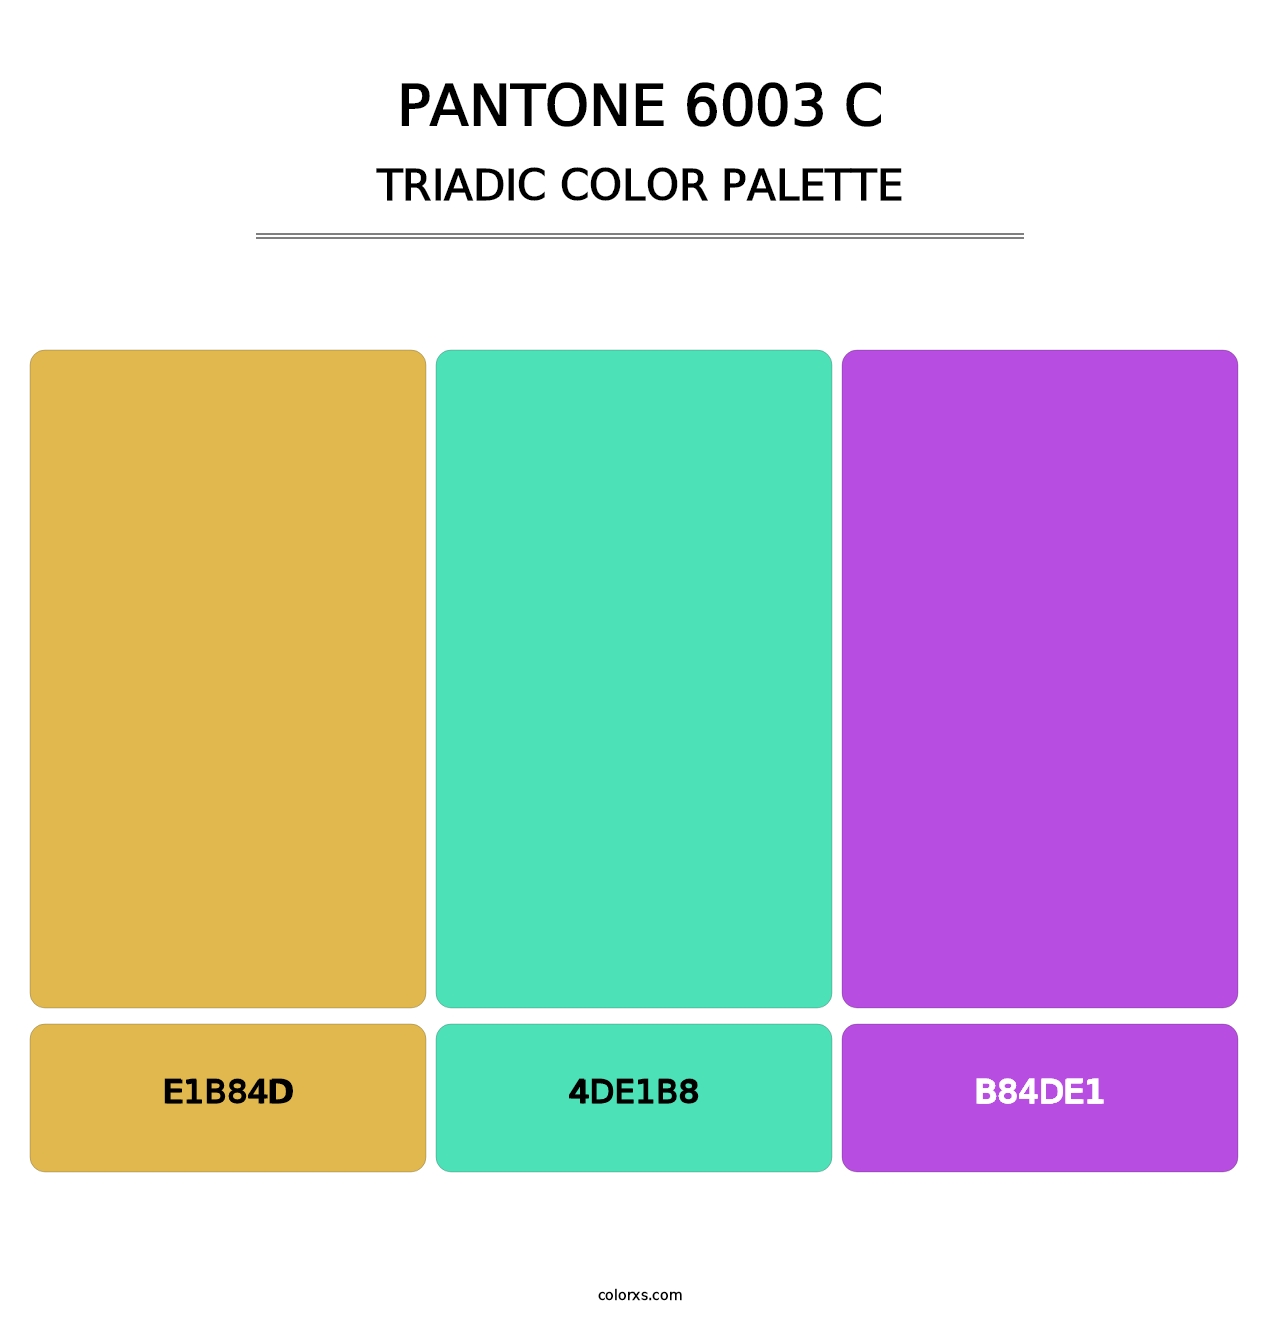 PANTONE 6003 C - Triadic Color Palette